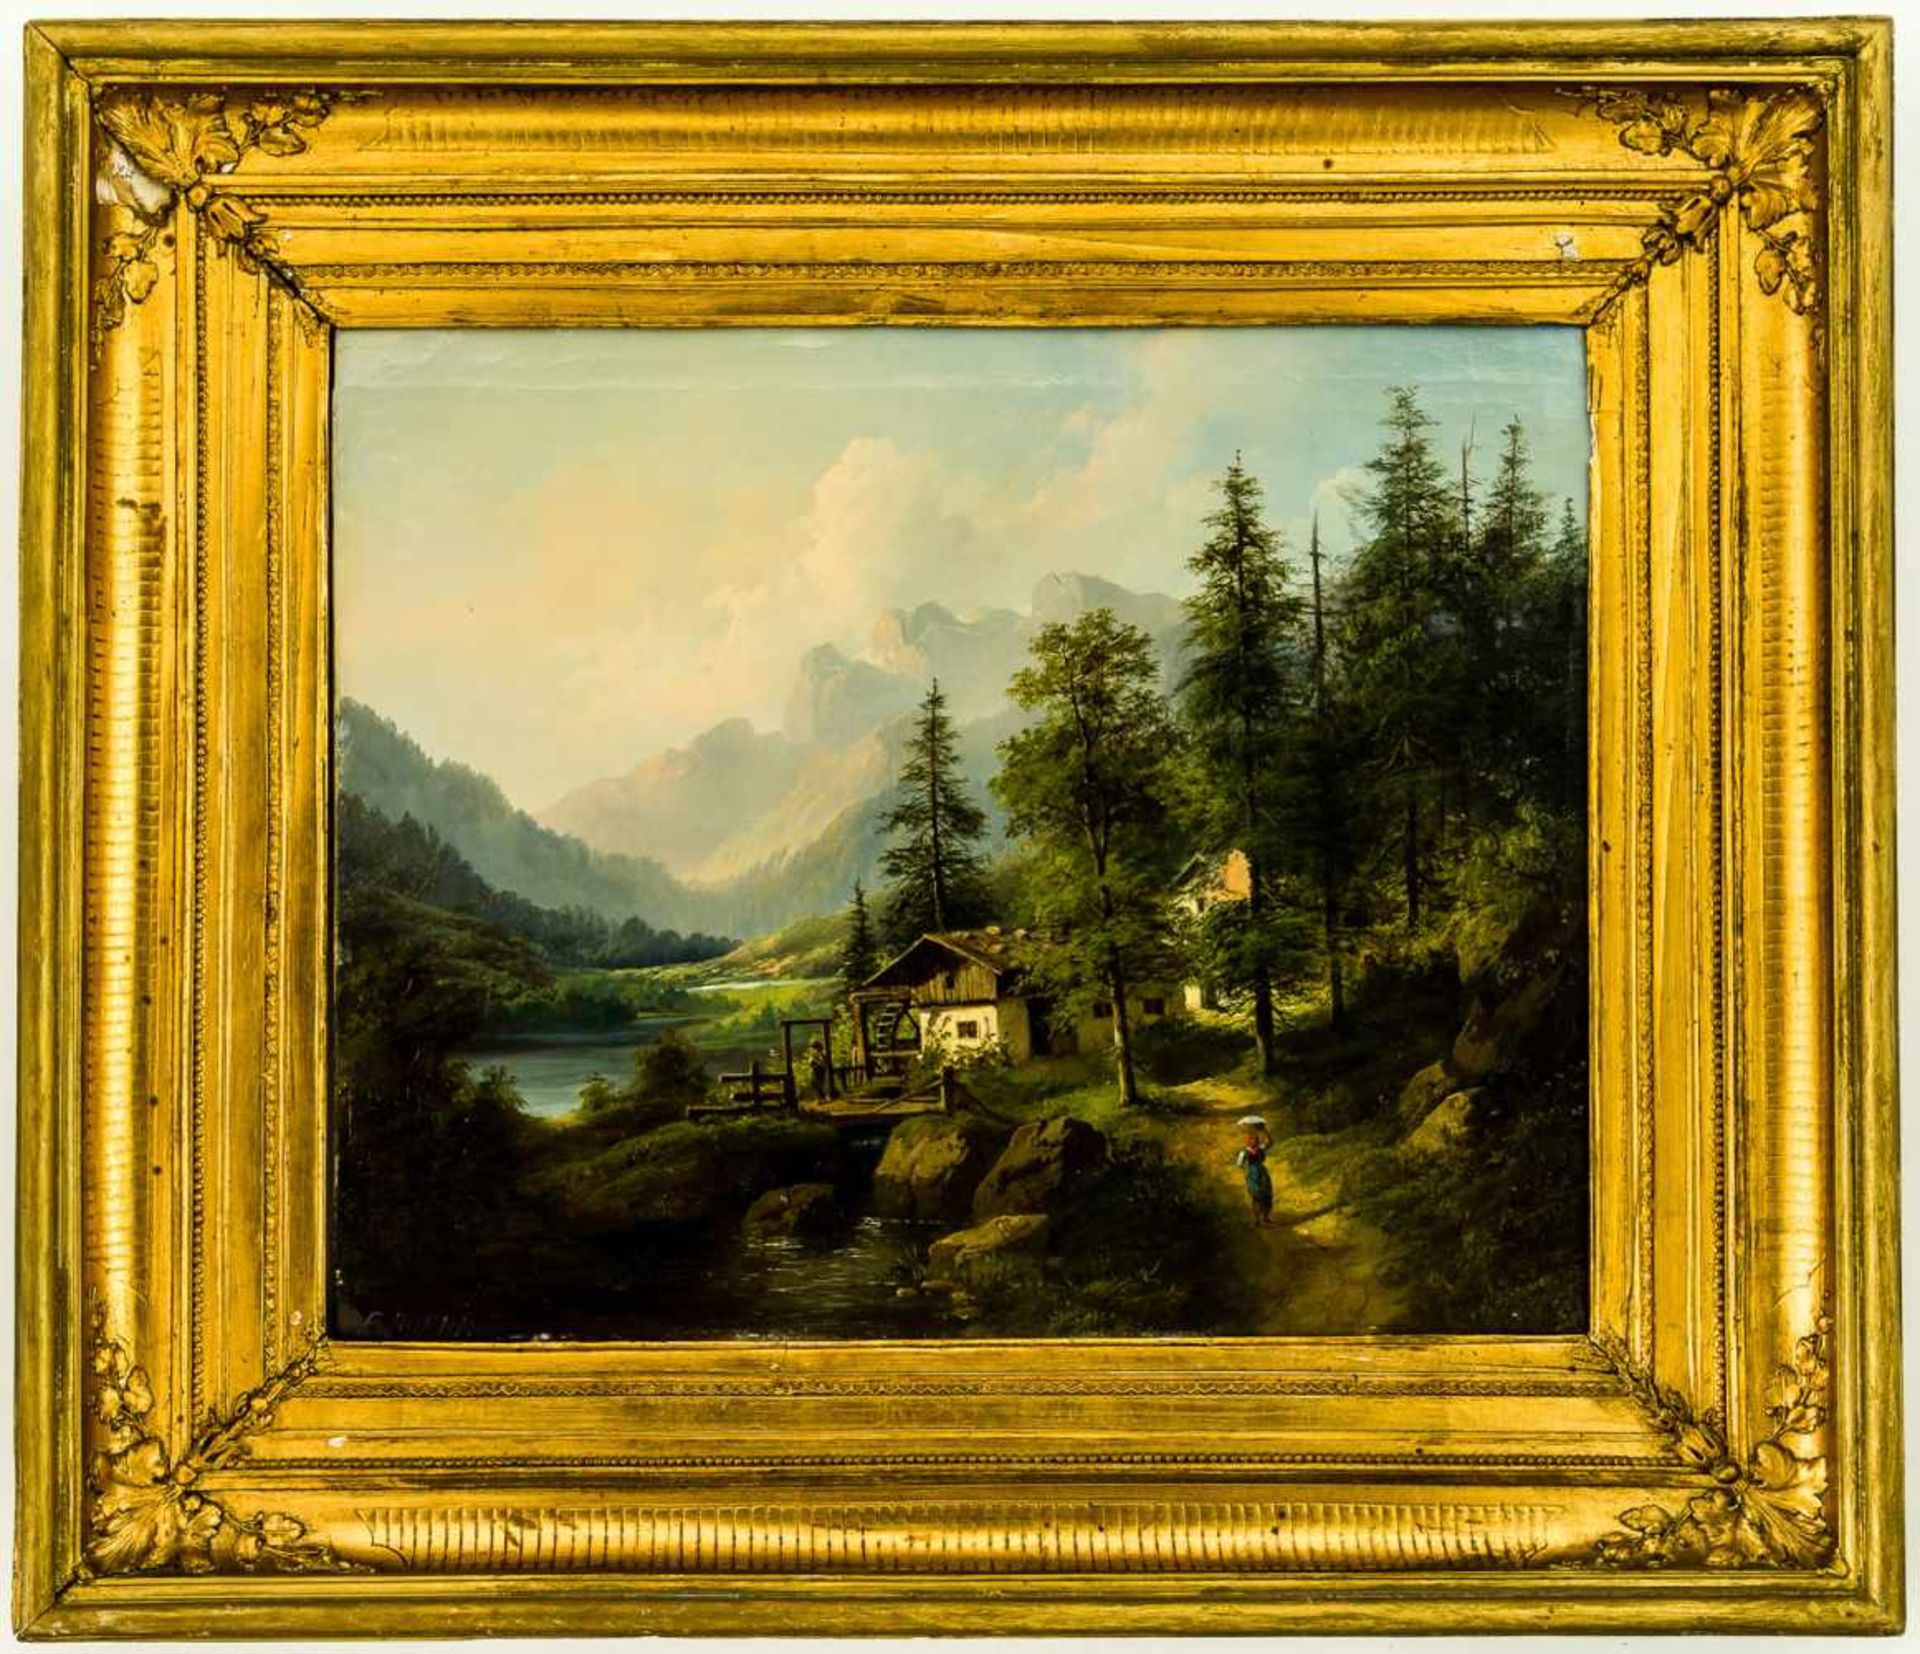 Mühle bei Salzburg Öl / Leinwand, unten links signiert "E.Boehm", wohl Eduard Boehm (1830-1890) 55 x - Bild 2 aus 2